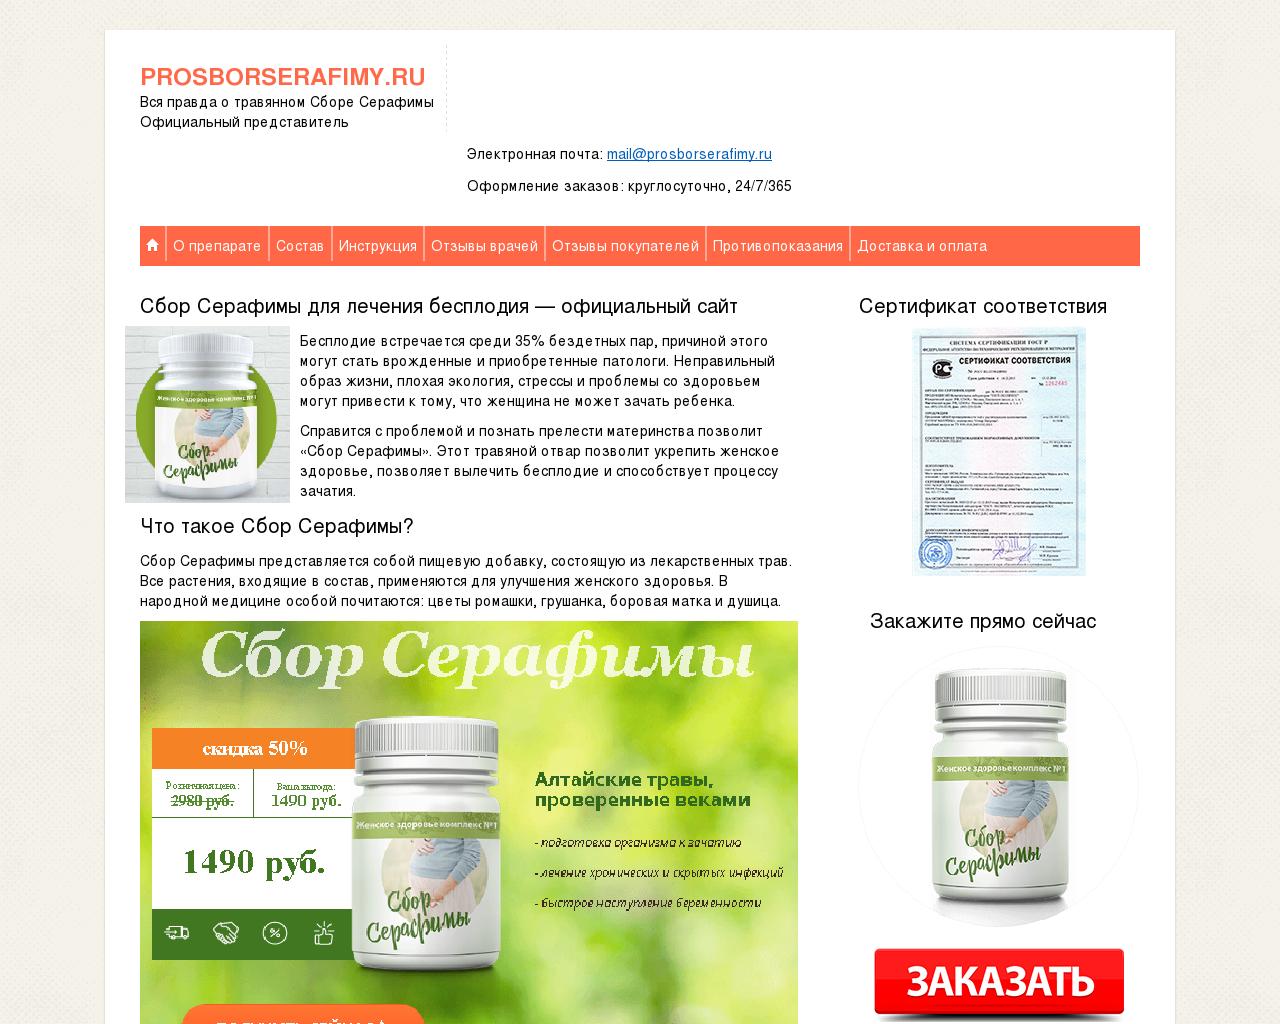 Изображение сайта prosborserafimy.ru в разрешении 1280x1024